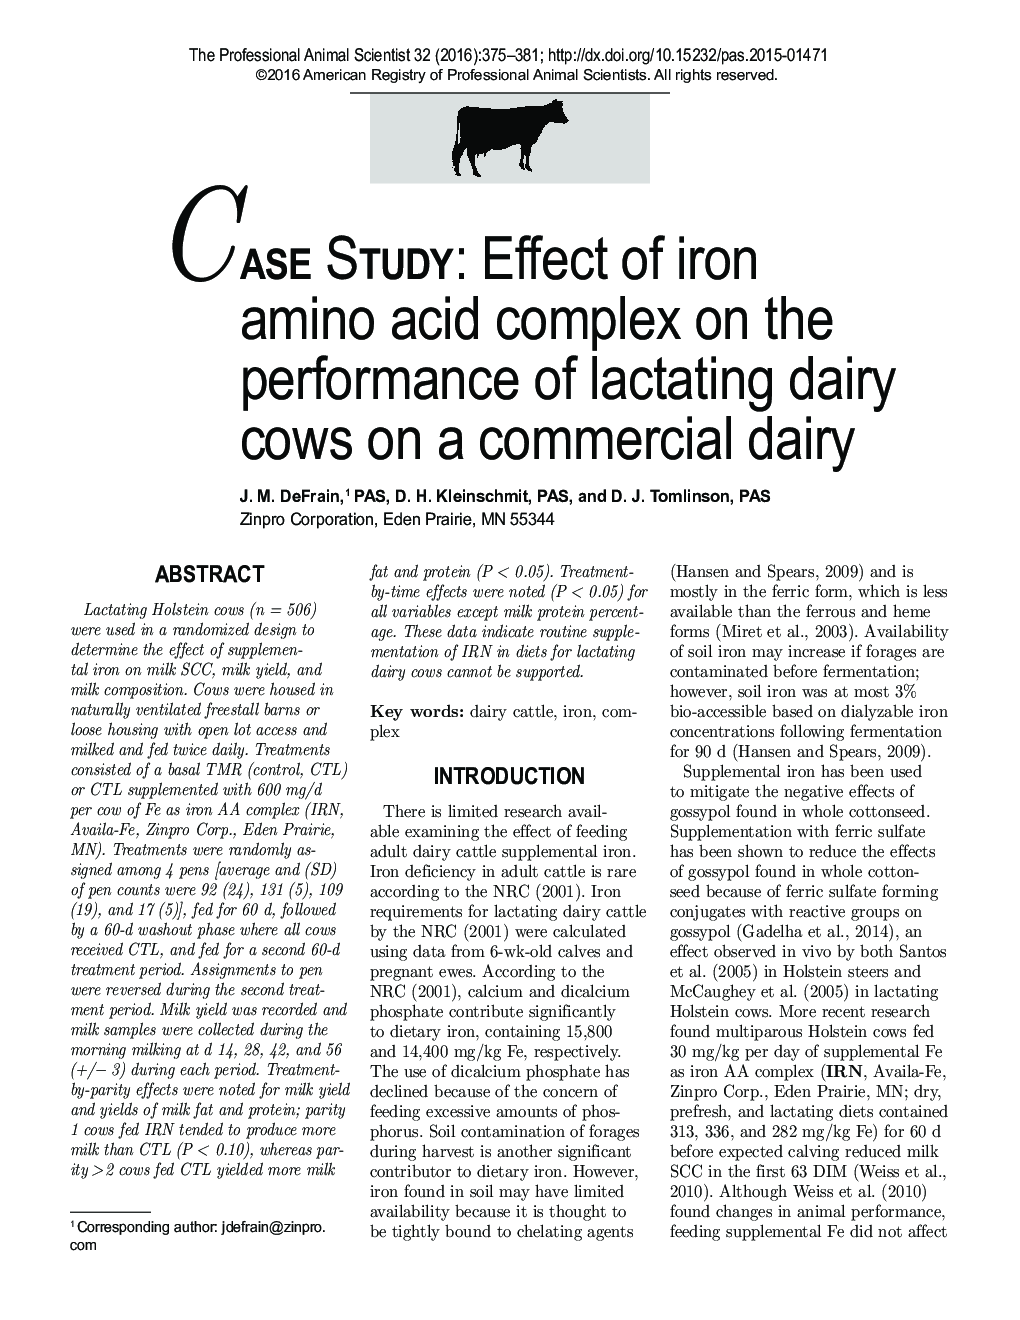 مطالعه موردی: اثر کمپلکس آمینو اسید آهن بر عملکرد گاو شیرده در یک لبنی تجاری 